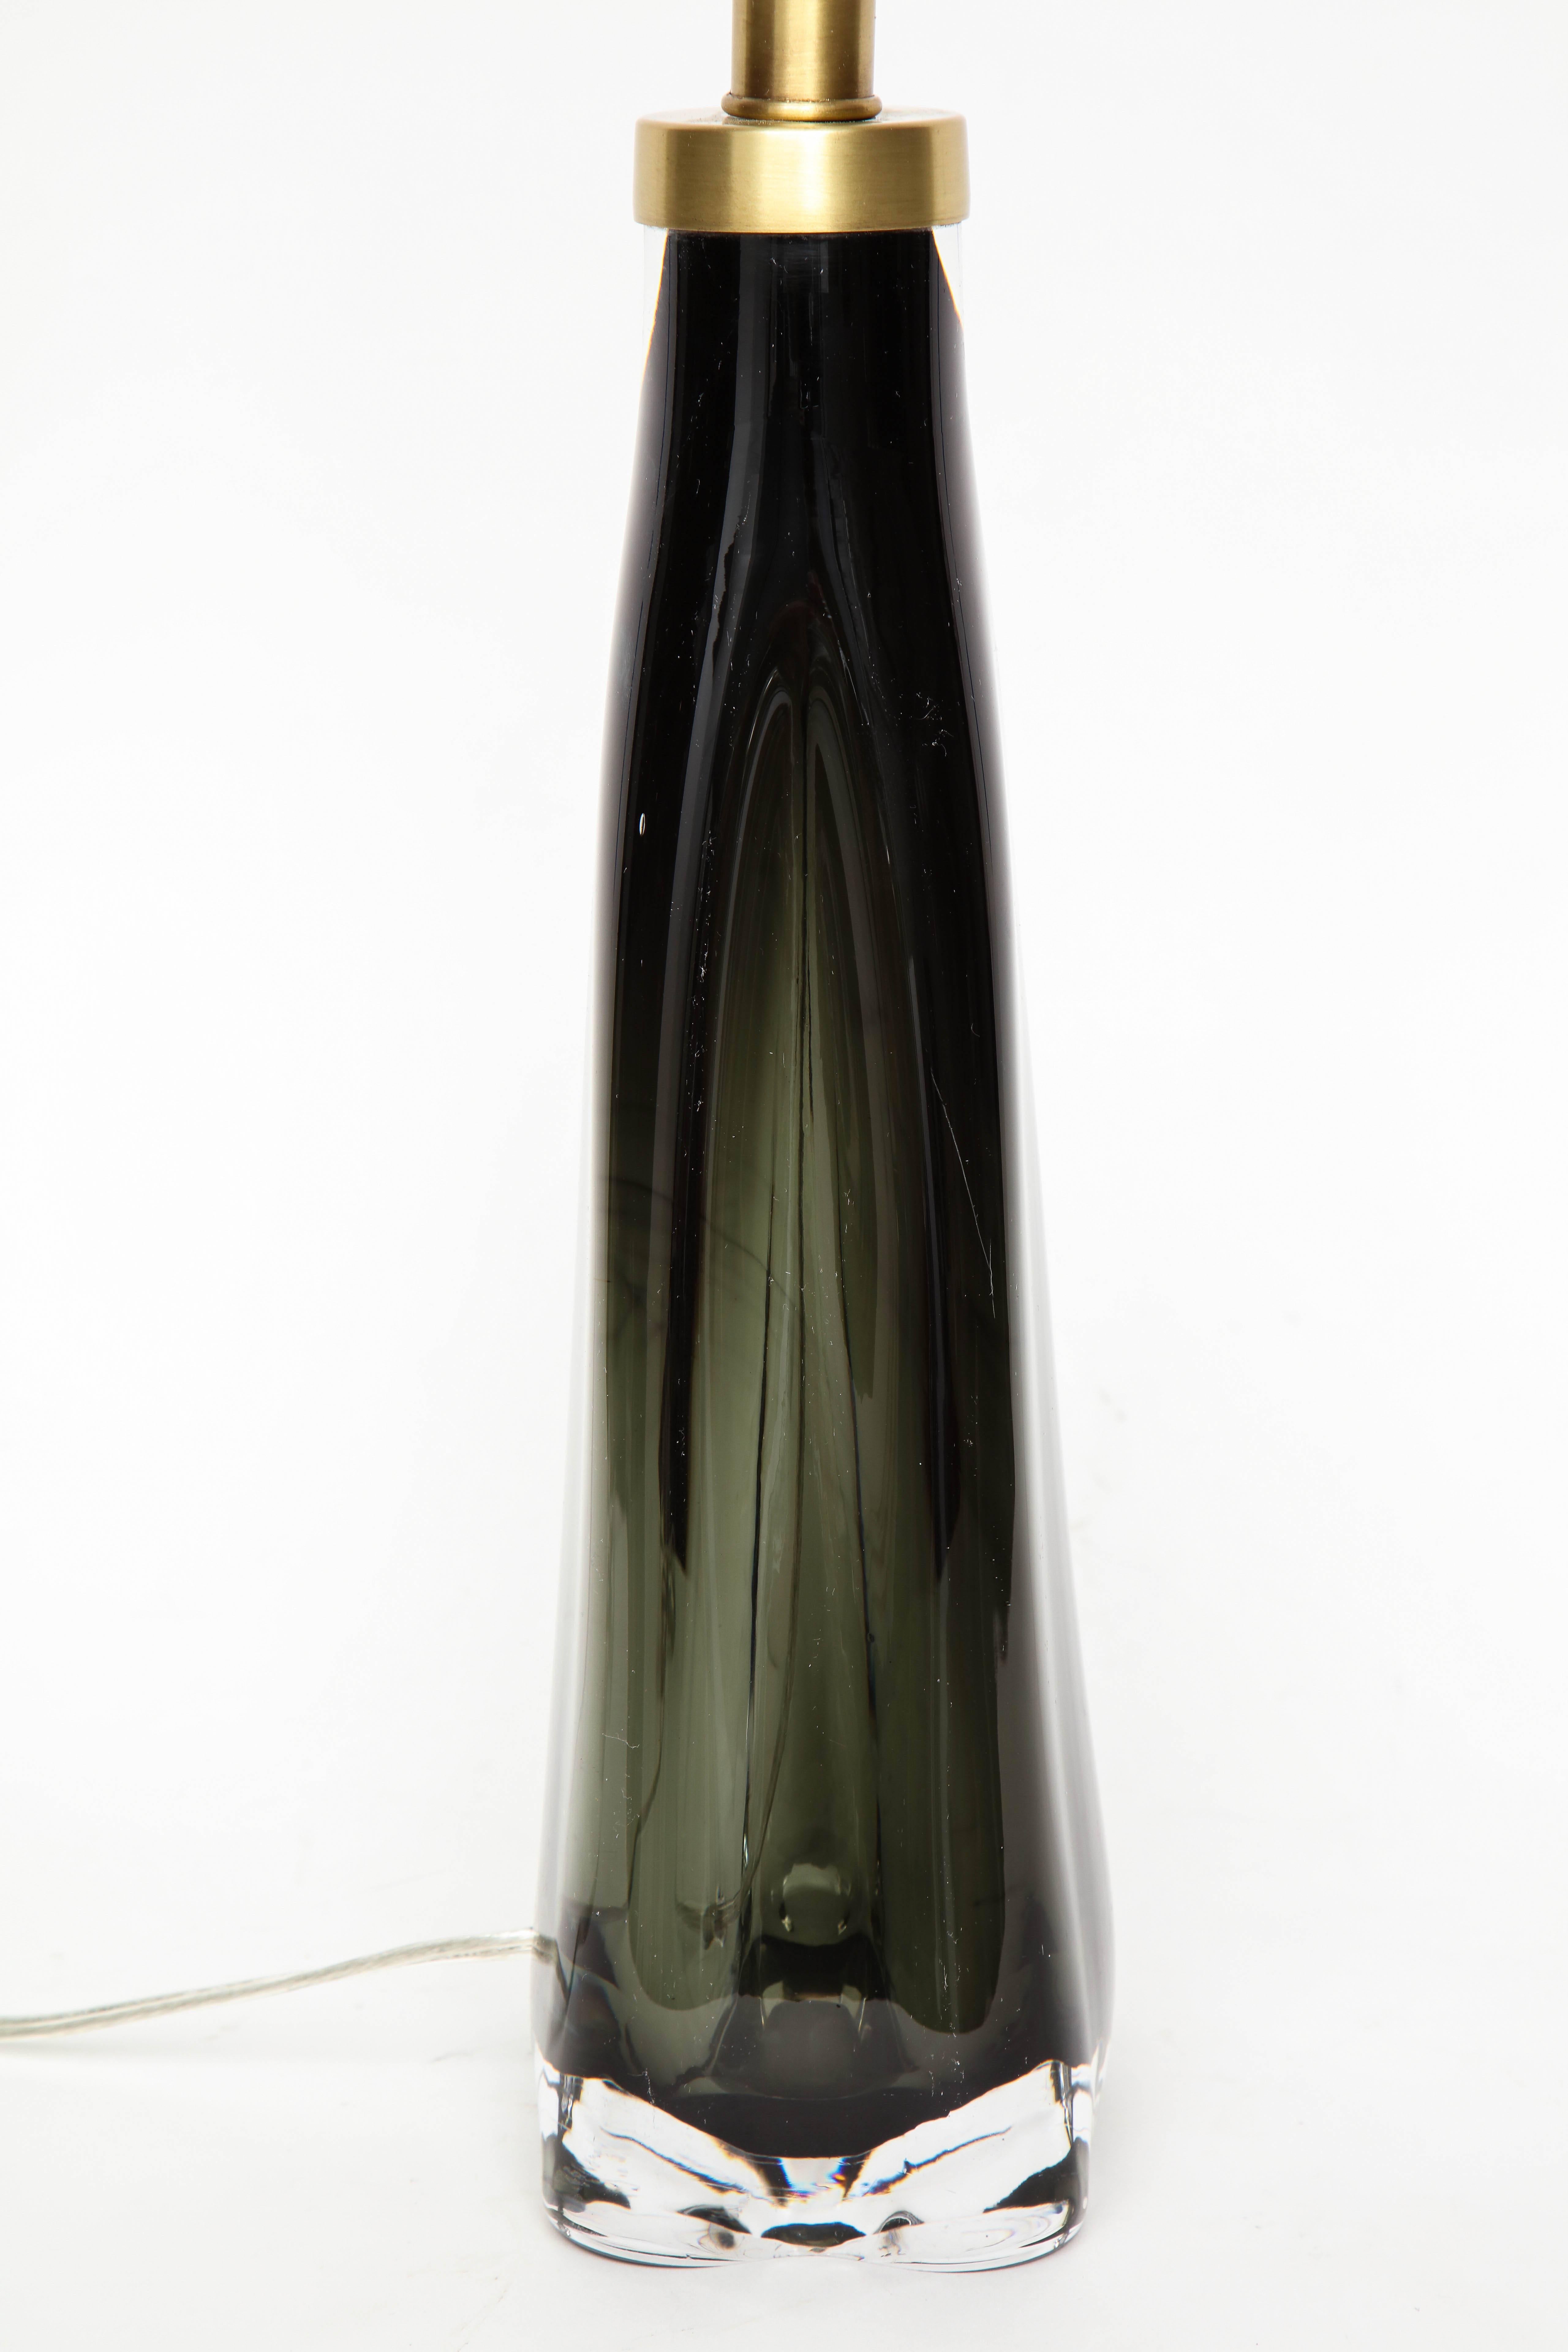 Brass Nils Landberg/Orrefors Dark Bottle Green Lamps For Sale